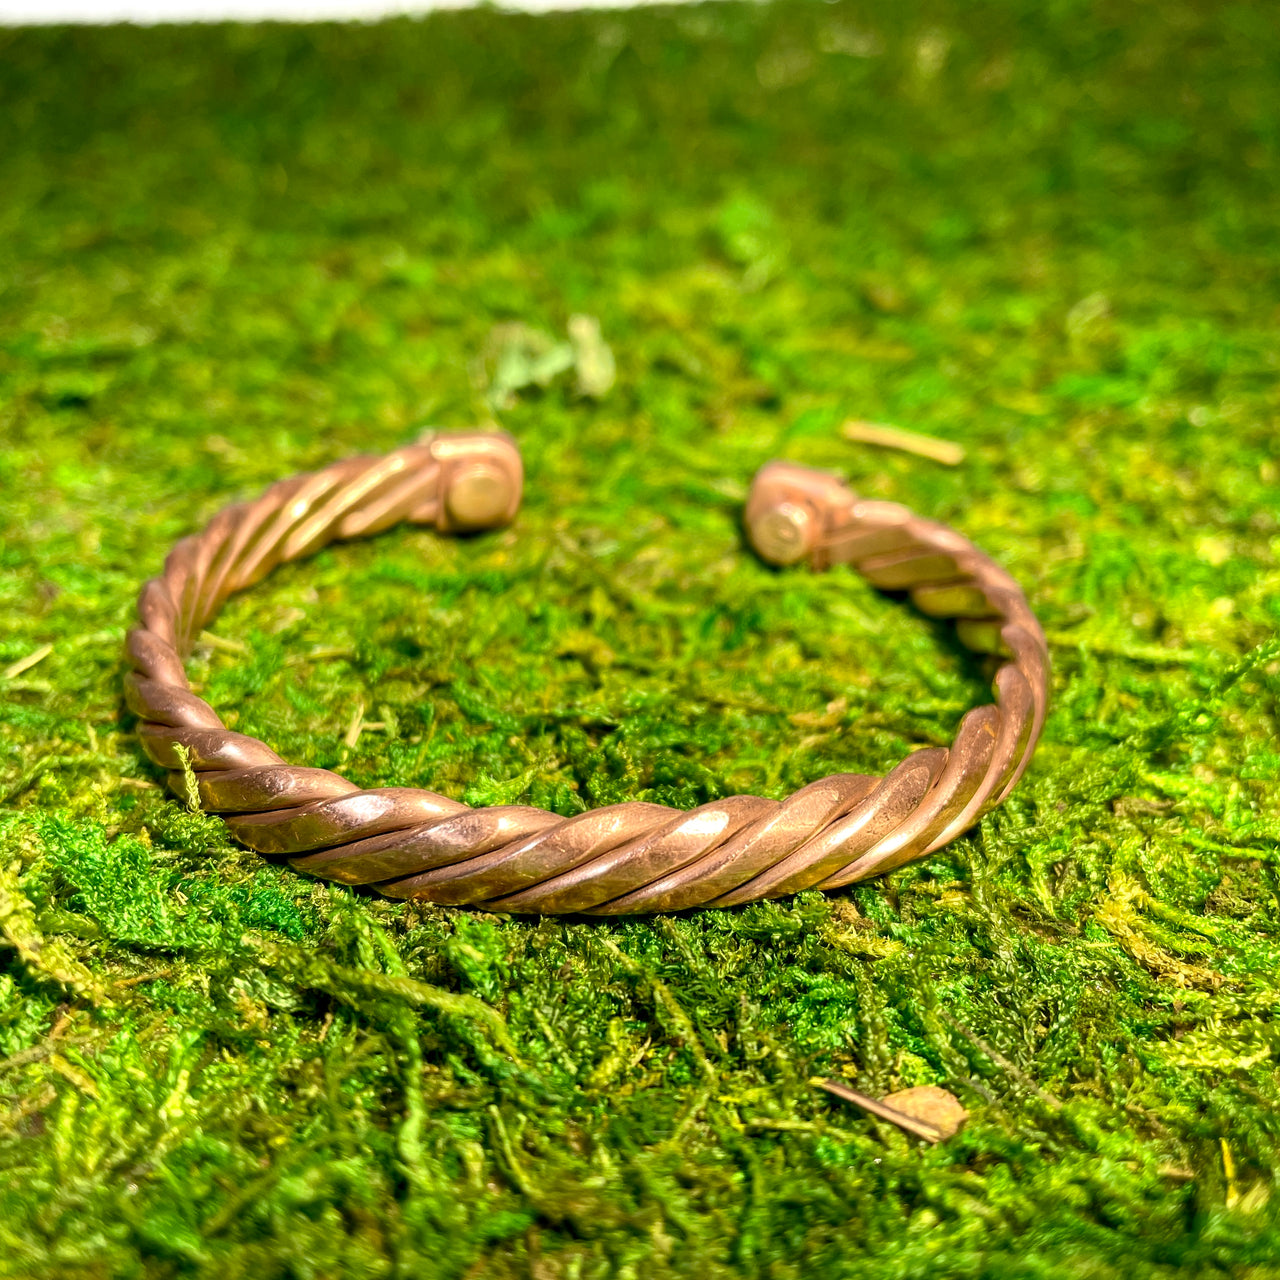 Copper Bracelet #J659